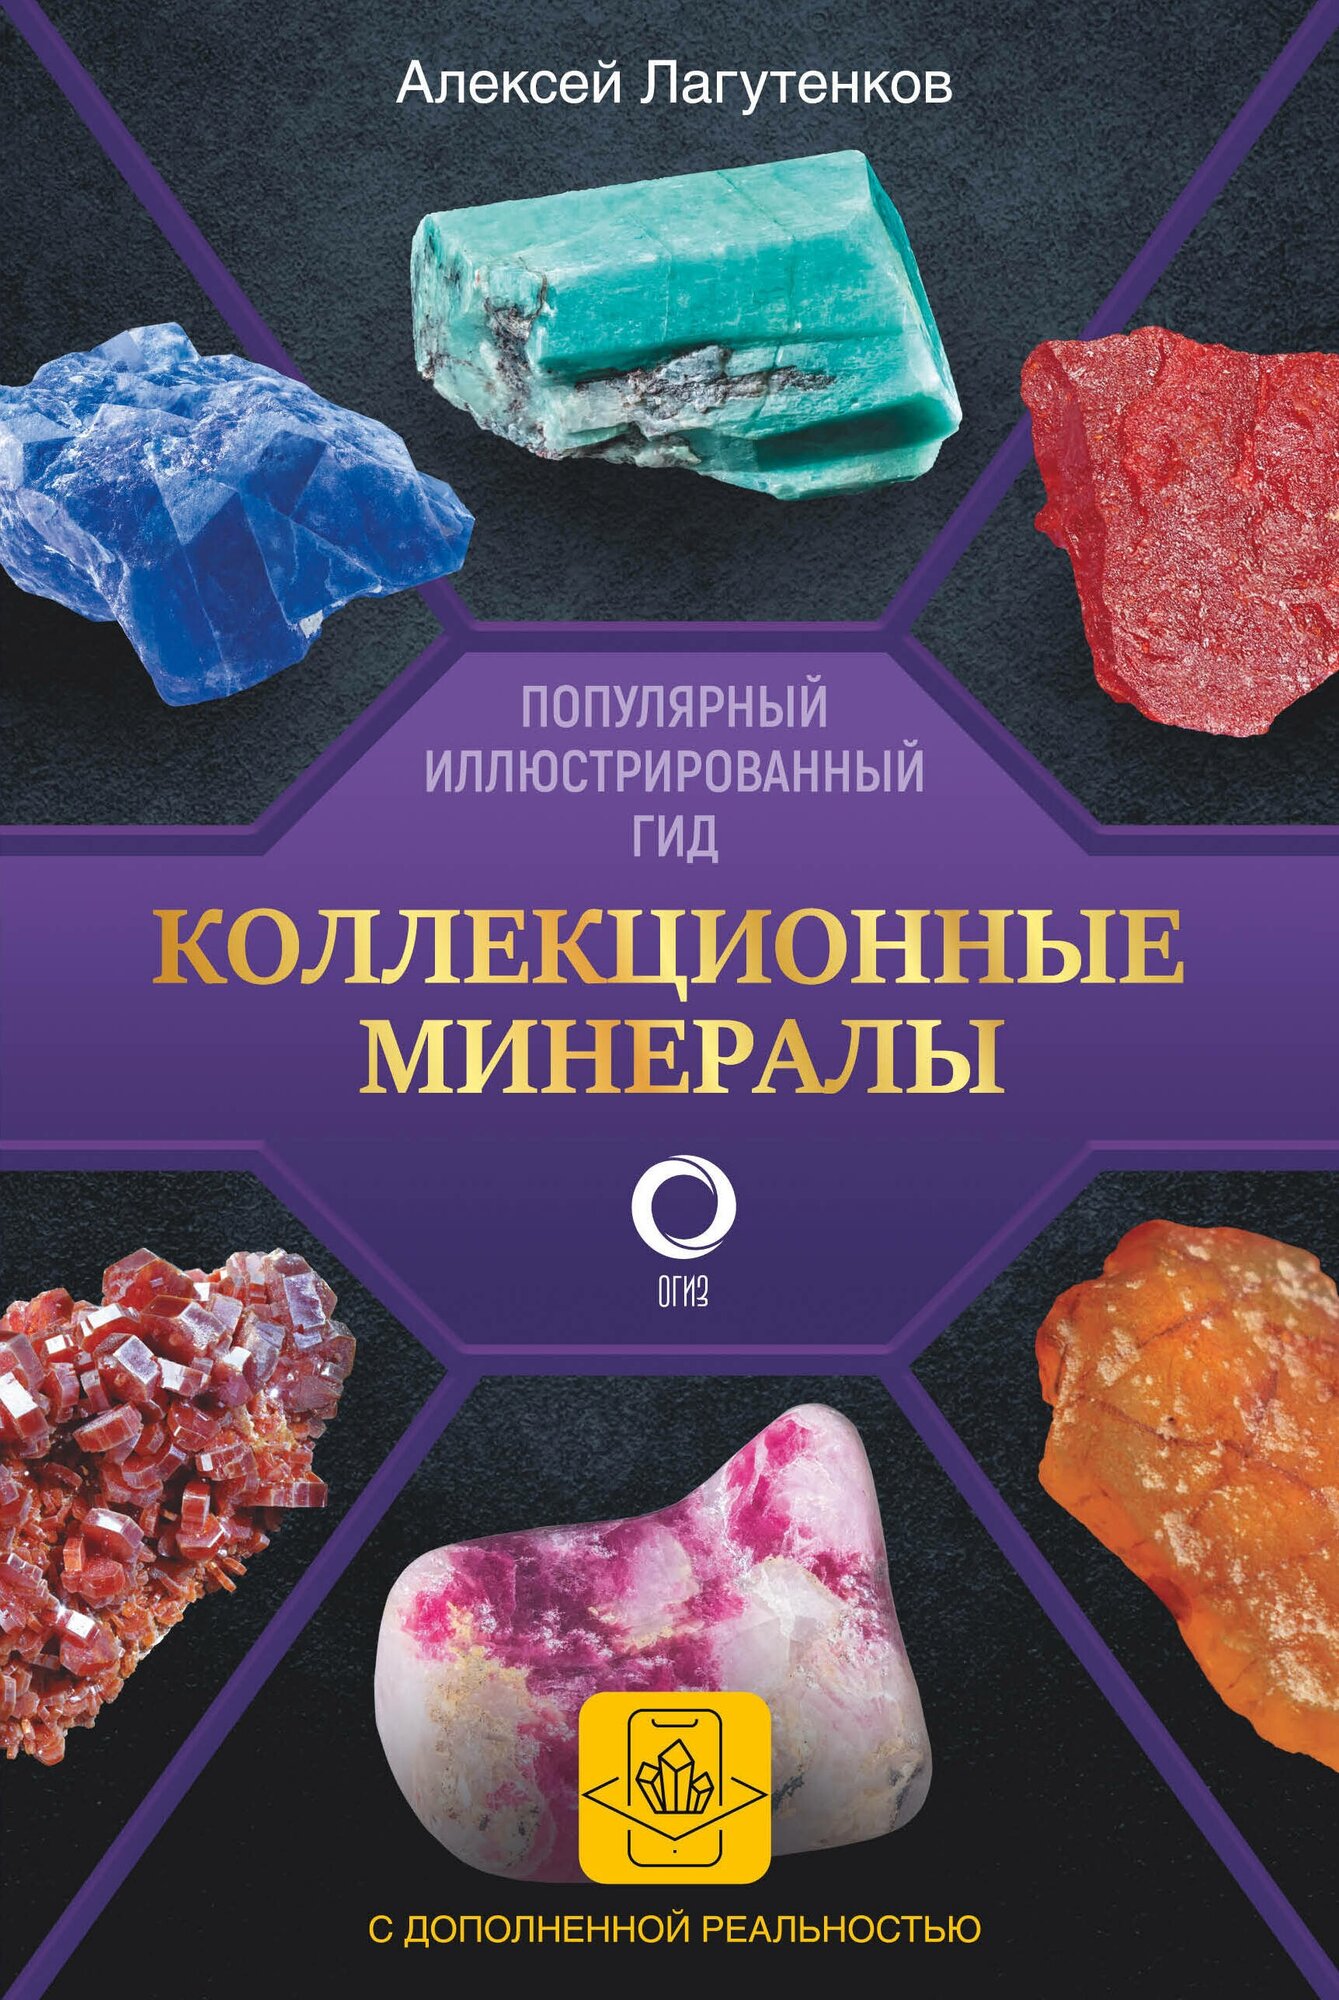 ПопулярныйИллГид Коллекционные минералы [с дополн. реальностью] (Лагутенков А. А.)